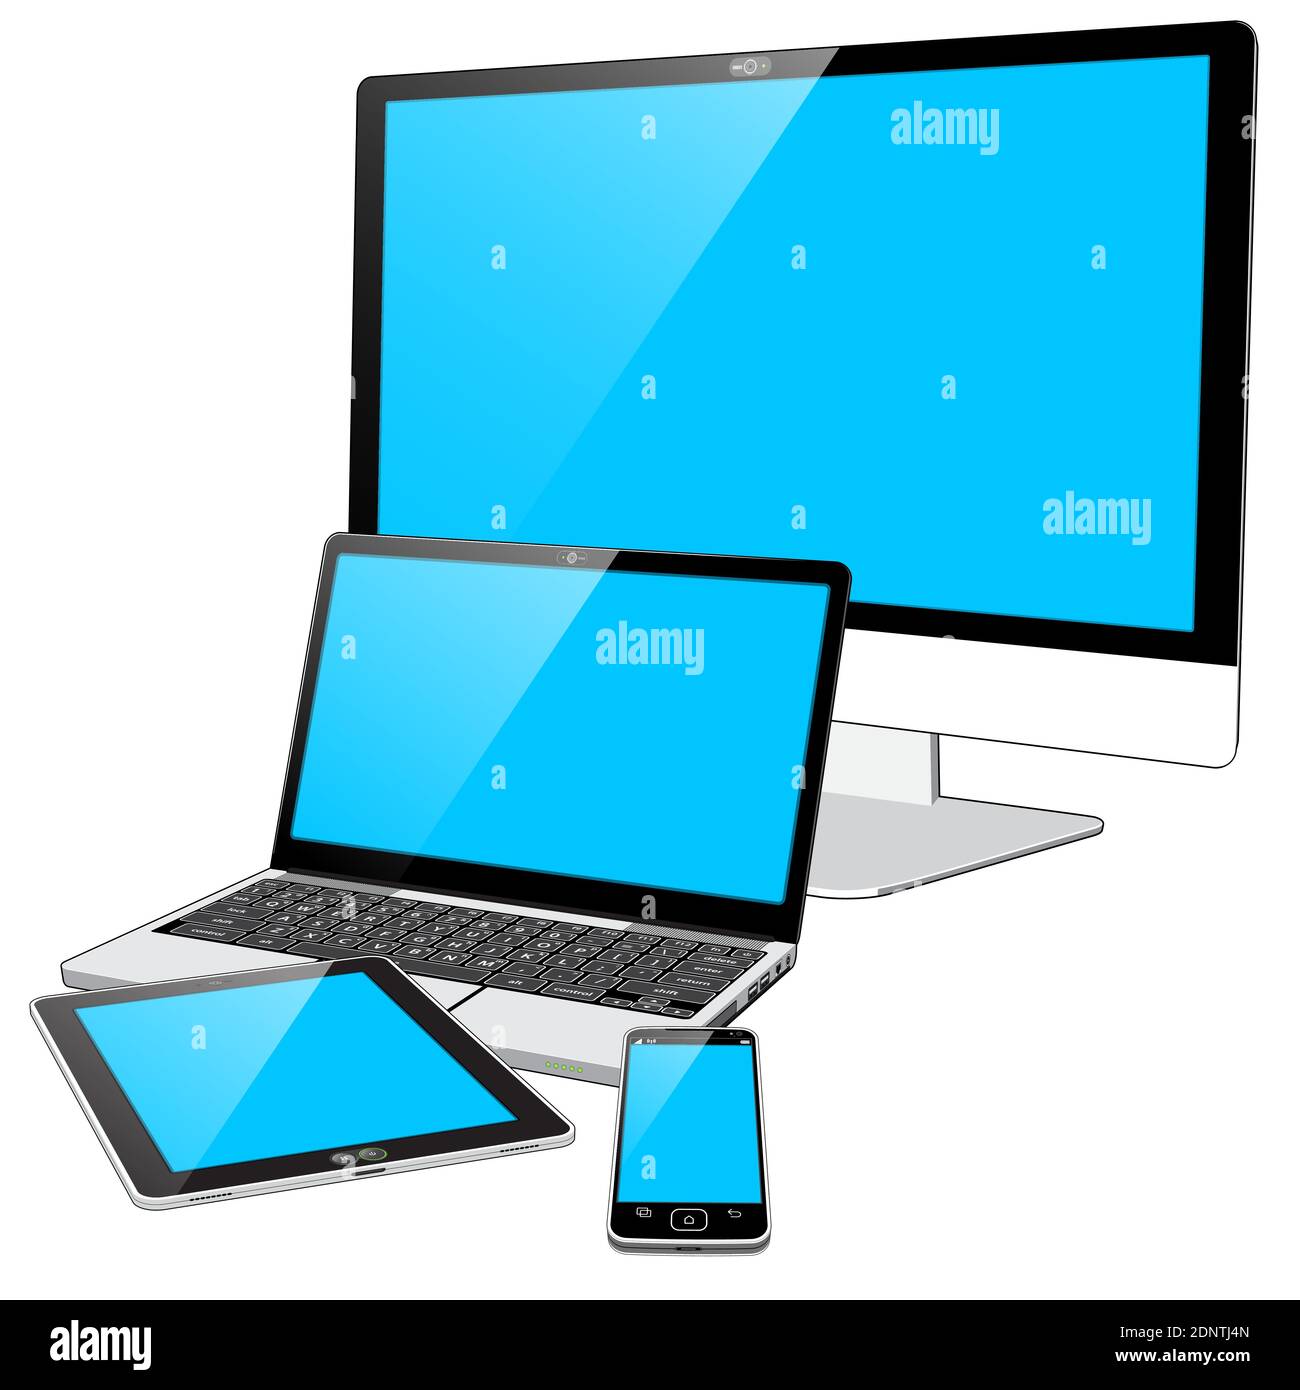 4 dispositivi connessi al Web: Uno smartphone, un Tablet PC, un PC portatile e un grande display in un unico PC. Le schermate blu indicano che i dispositivi sono accesi. Illustrazione Vettoriale